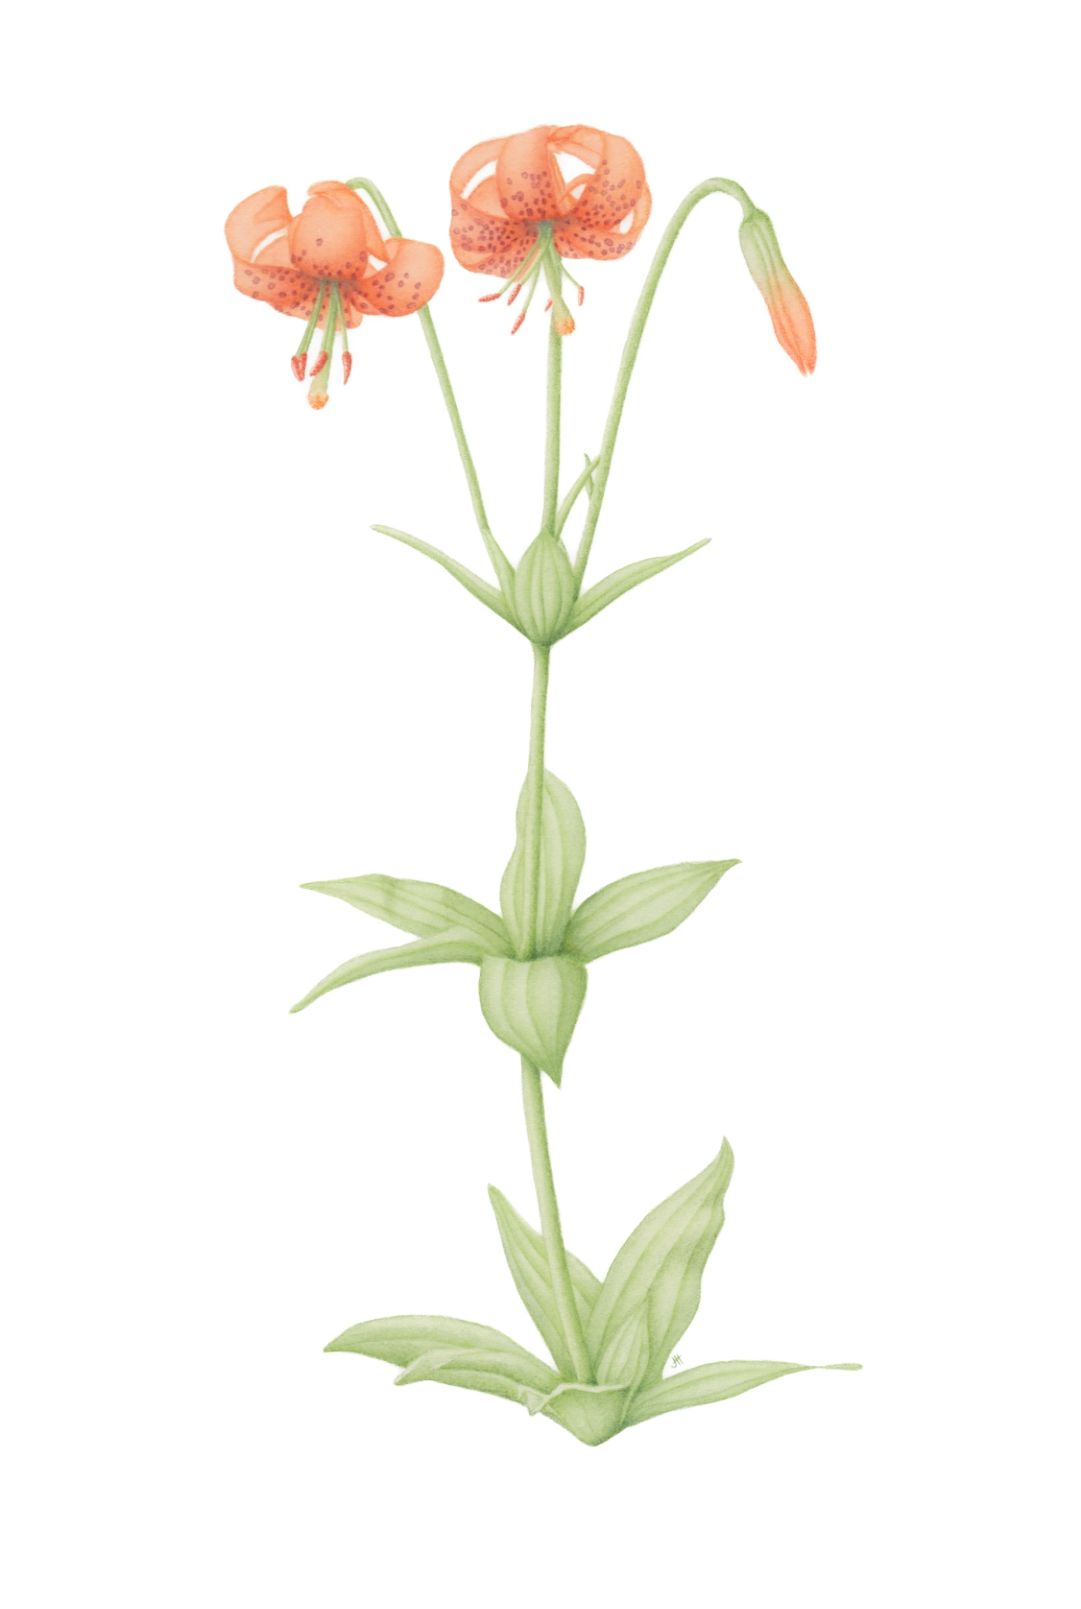 Tiger Lily, Lilium columbianum